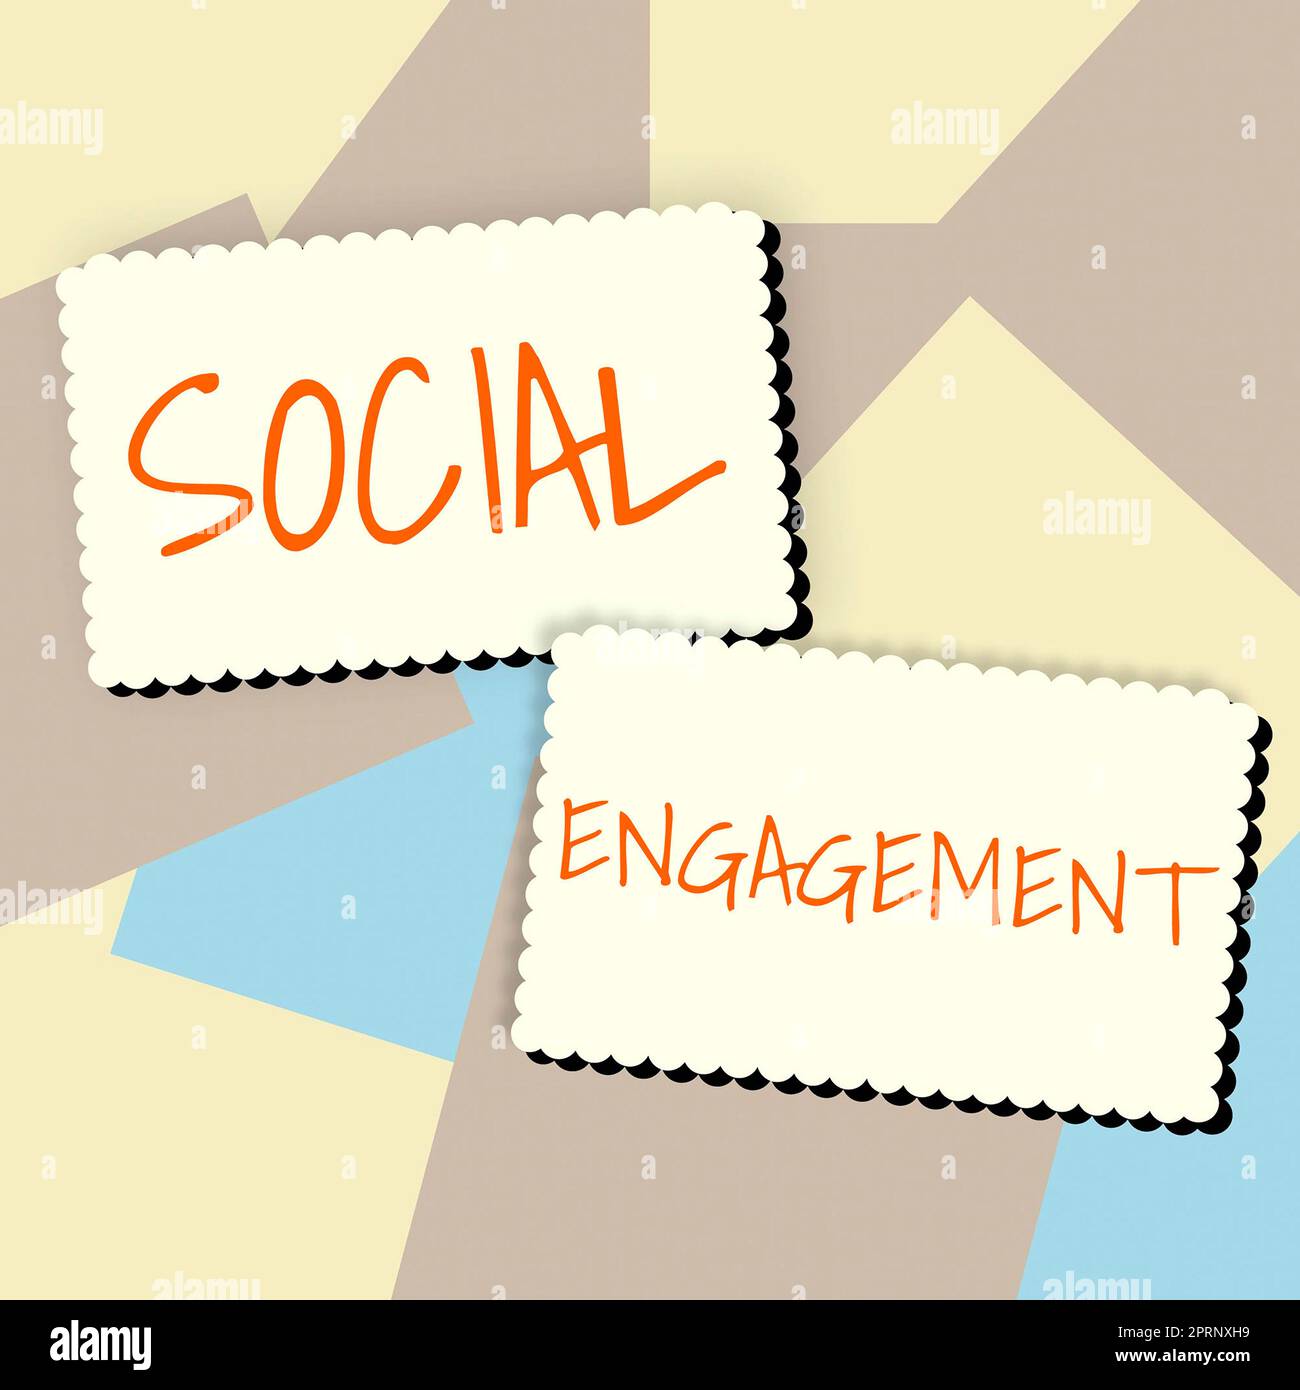 Schild mit der Anzeige der sozialen EngagementDegree of Engagement in einer Online-Community oder -Gesellschaft. Internet-Konzept Grad der Interaktion in einer Online-Community oder -Gesellschaft Stockfoto